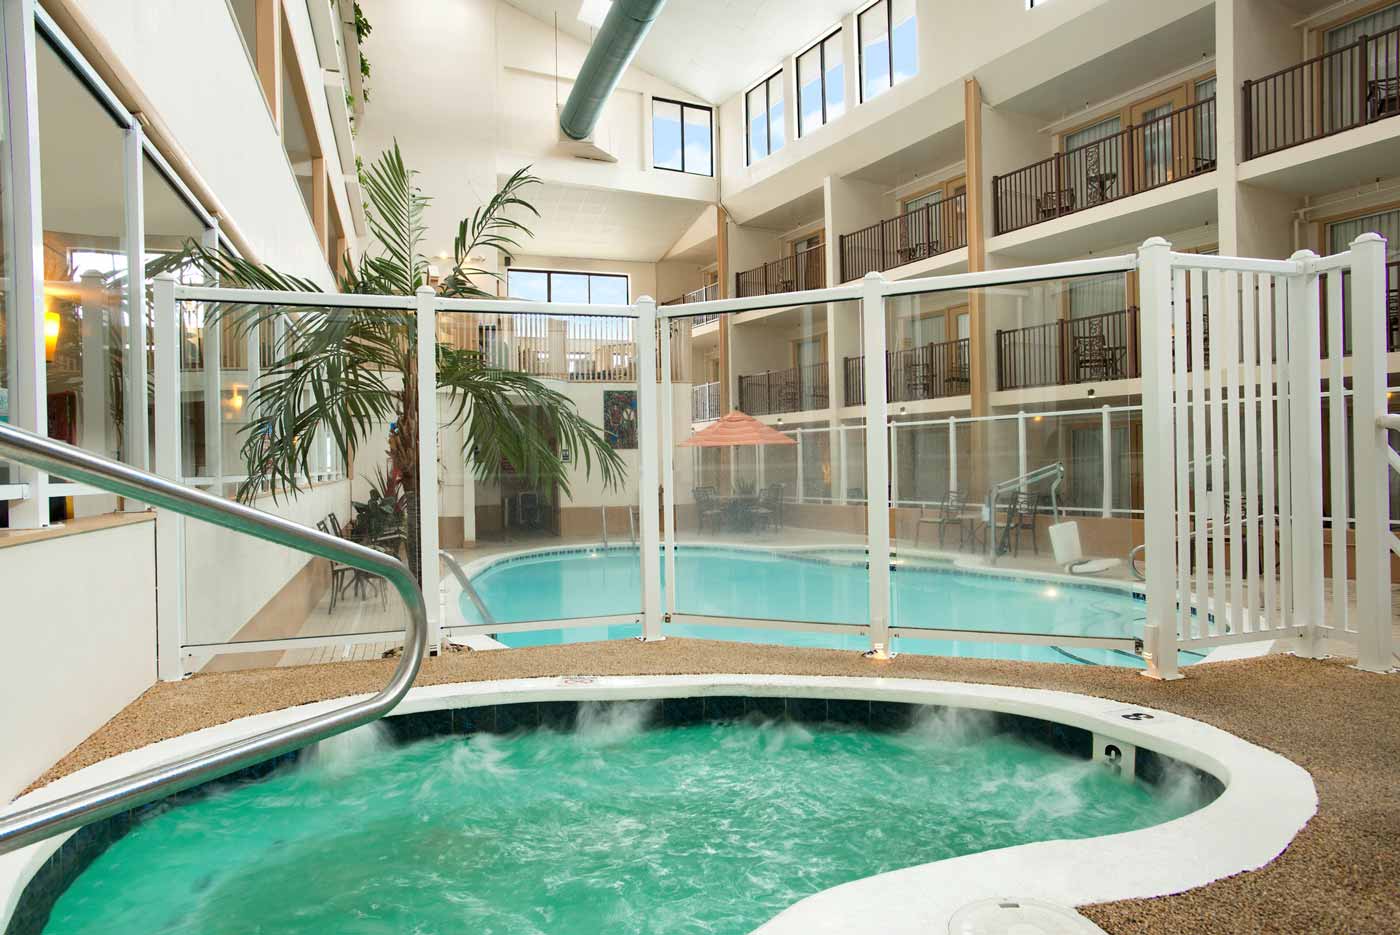 indoor atrium pool with jacuzzi hottub